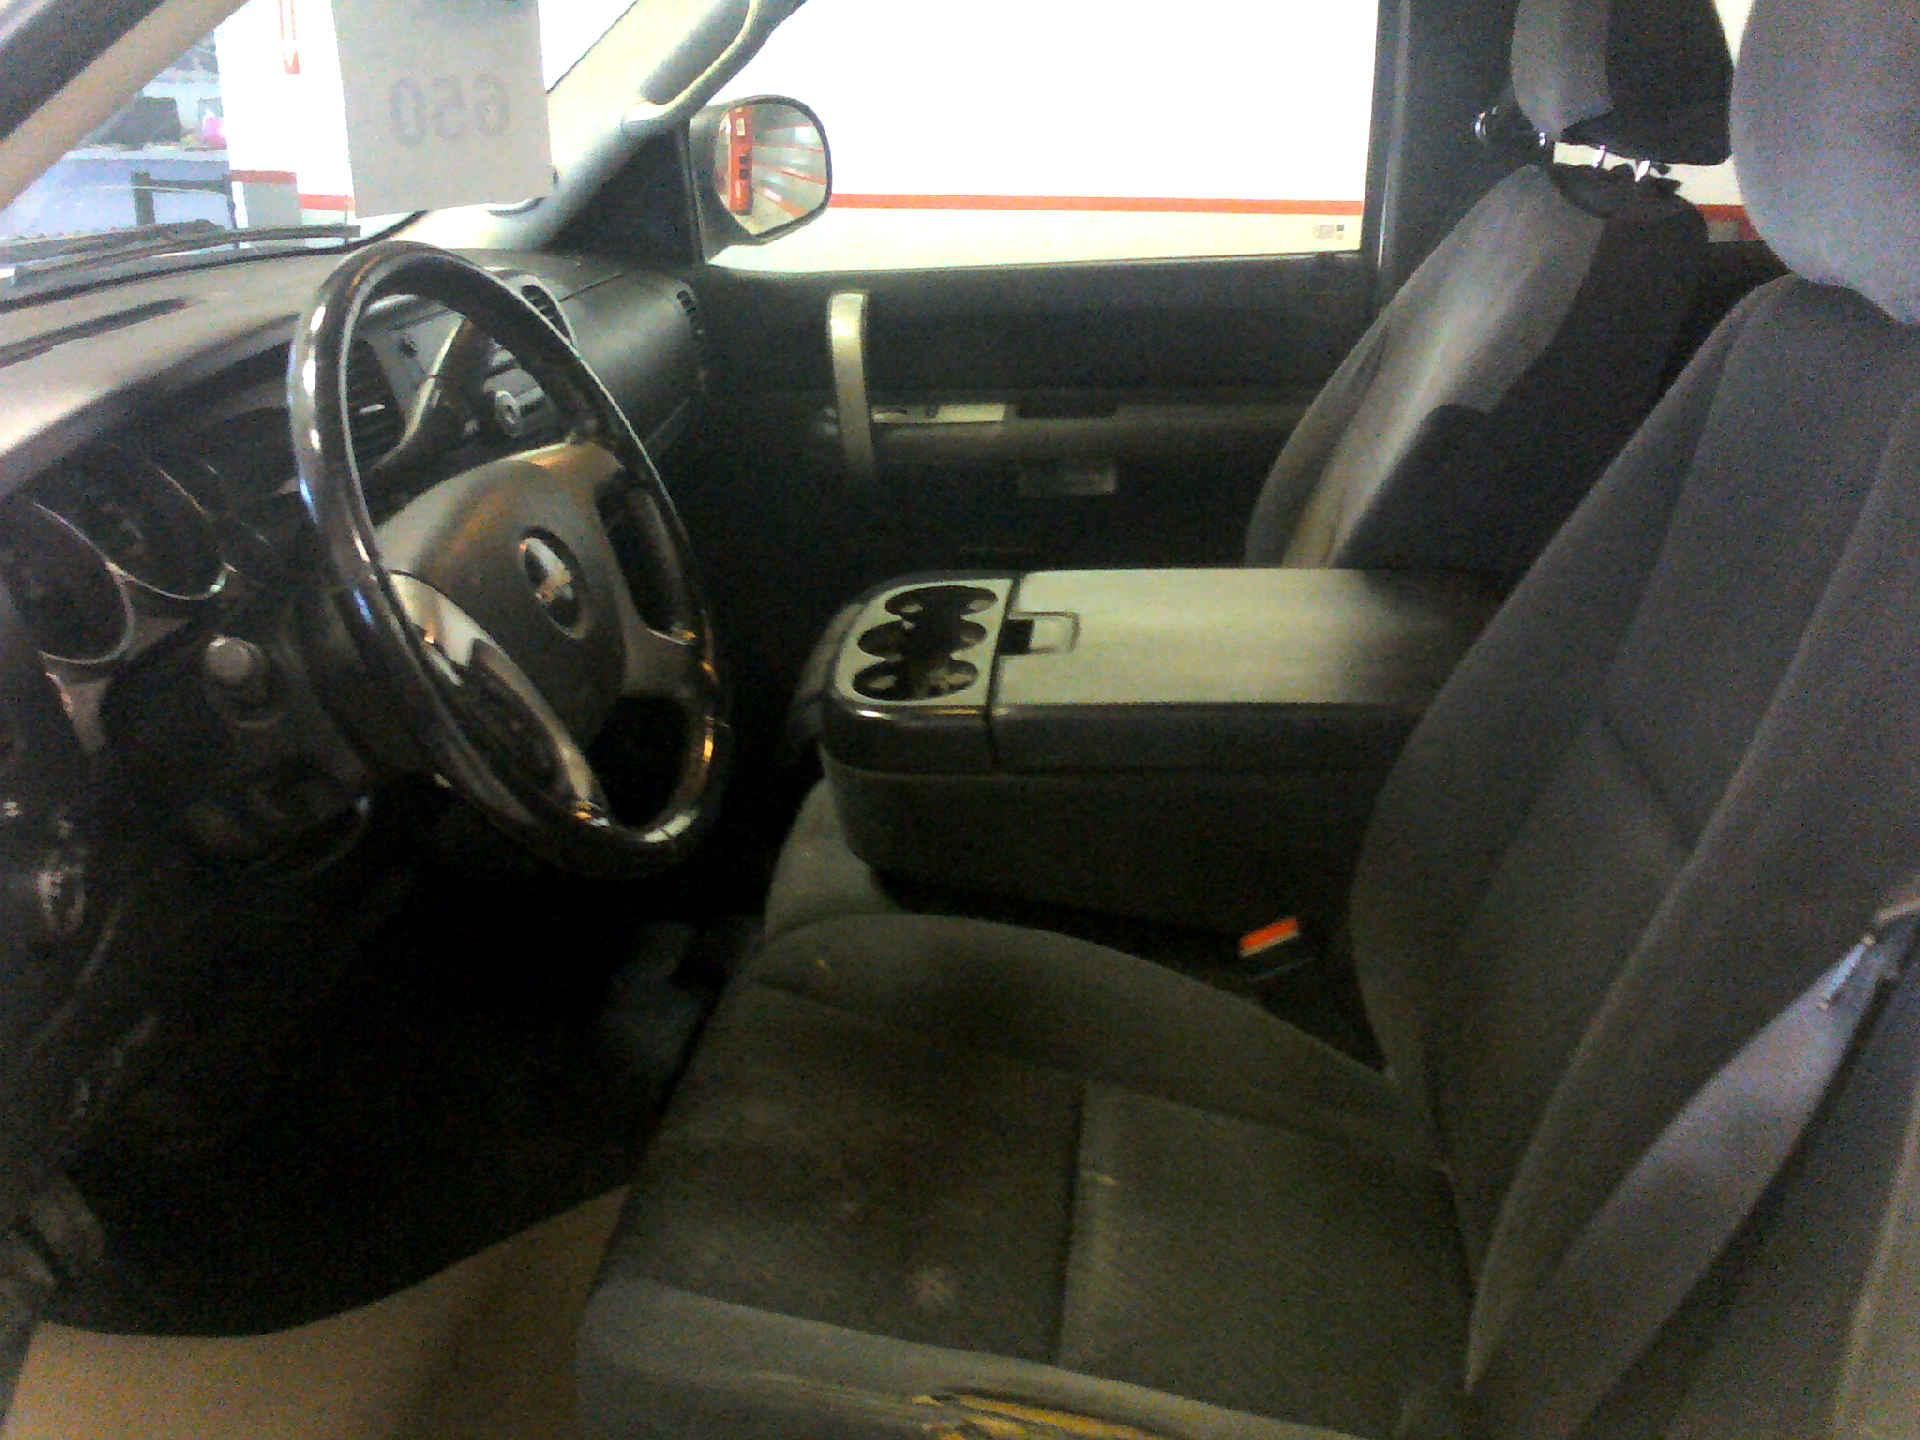 2009 GMC SIERRA 2500HD EXT. CAB LONG BOX 4WD 6.0L V8 16V OHV AUTOMATIC SN:1GTHK49K49E103009 - Image 5 of 8